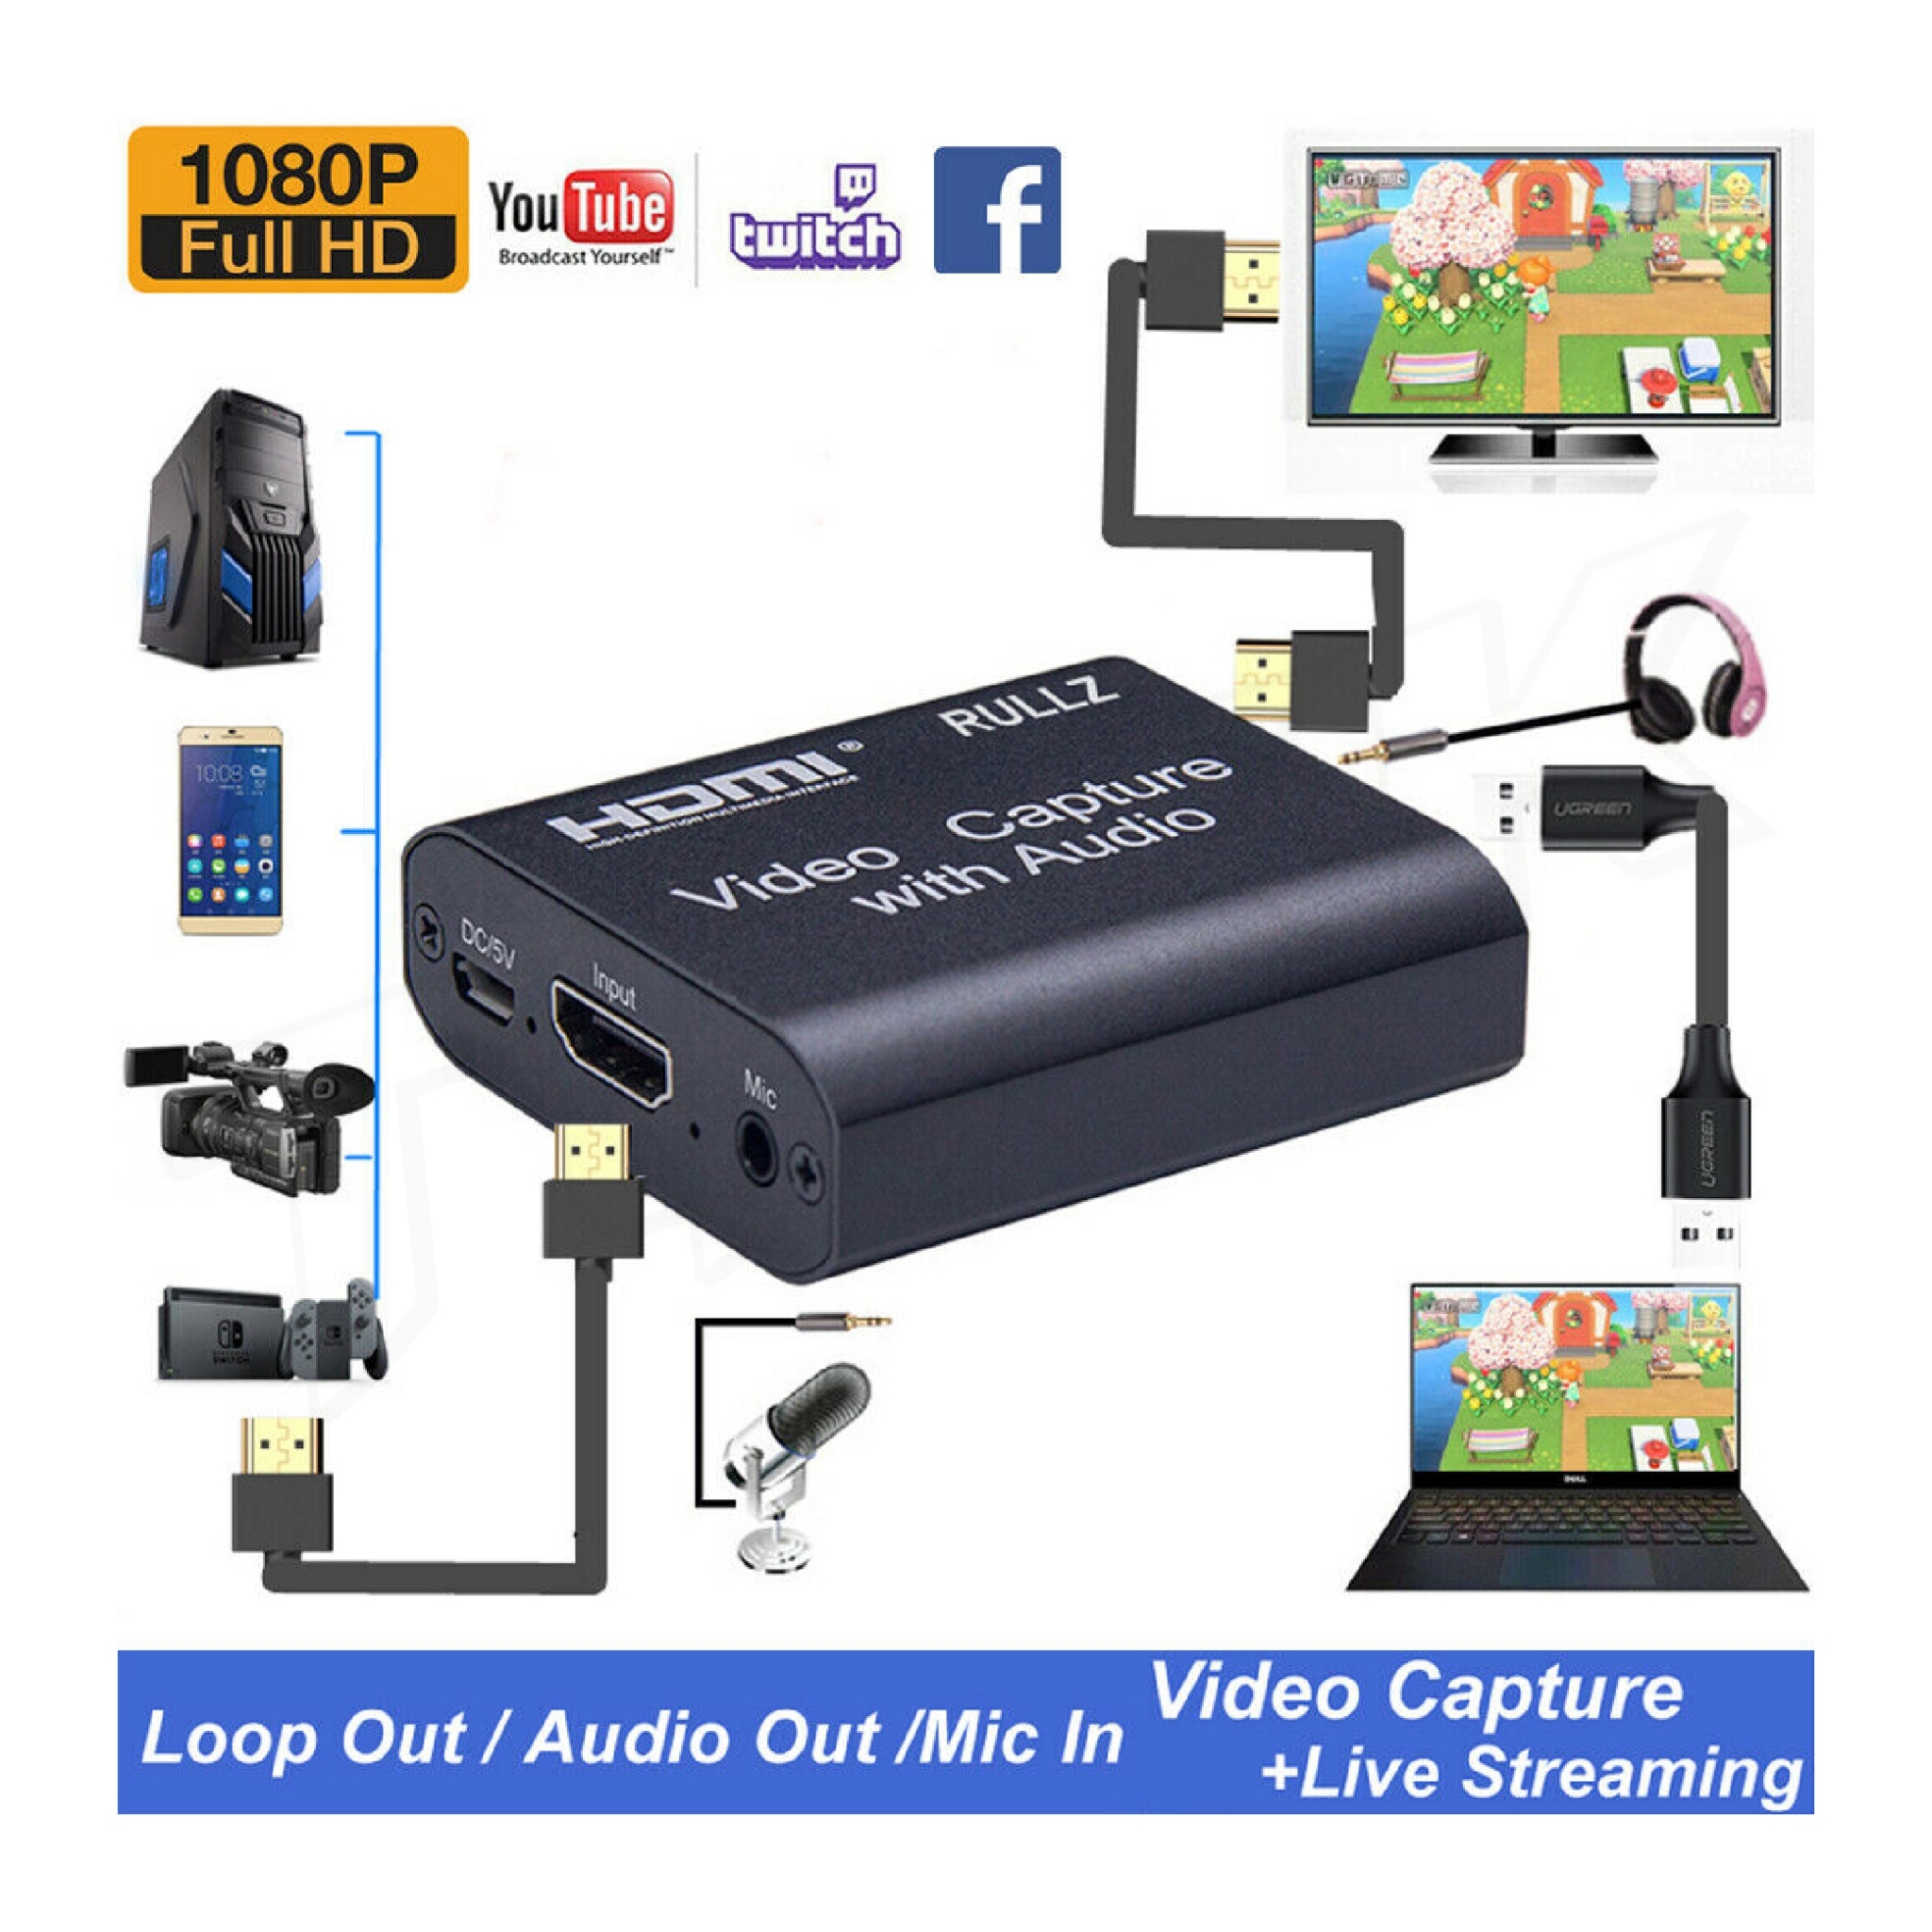 รูปภาพเพิ่มเติมเกี่ยวกับ JW-10 ได้ทั้งภาพและเสียง USB HDMI 4K 1080P Video Capture Card Device 1080P USB2.0(มีรูไมค์/หูฟัง)(แถมสาย USB) HD Capture